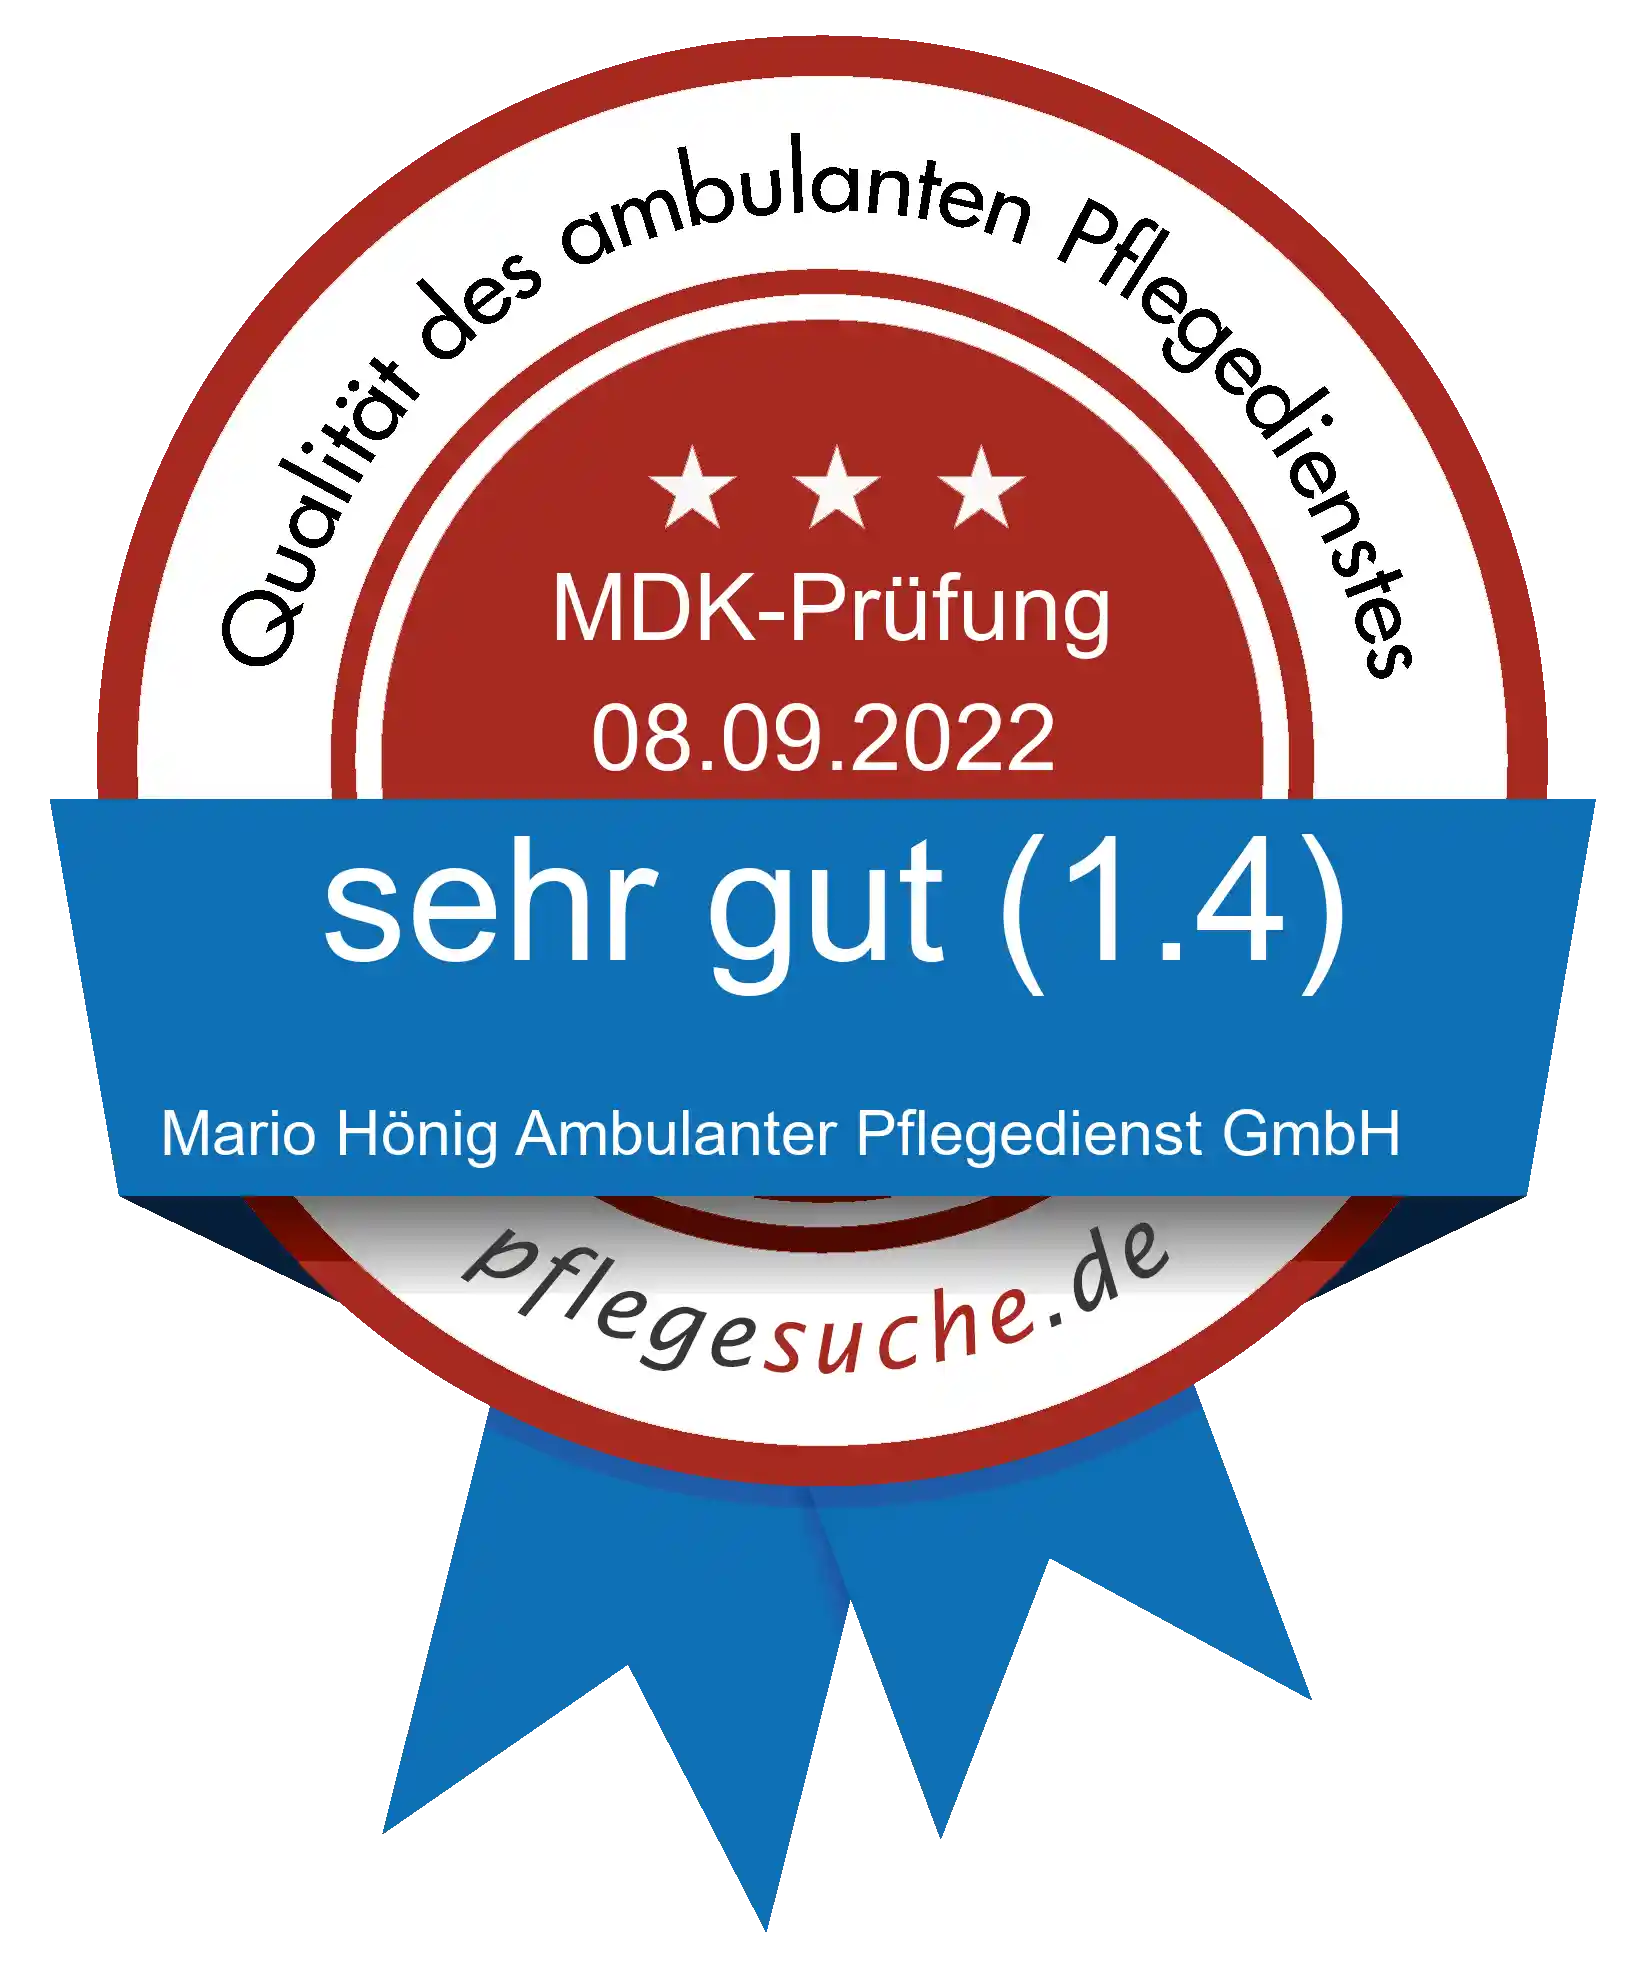 Siegel Benotung: Mario Hönig Ambulanter Pflegedienst GmbH